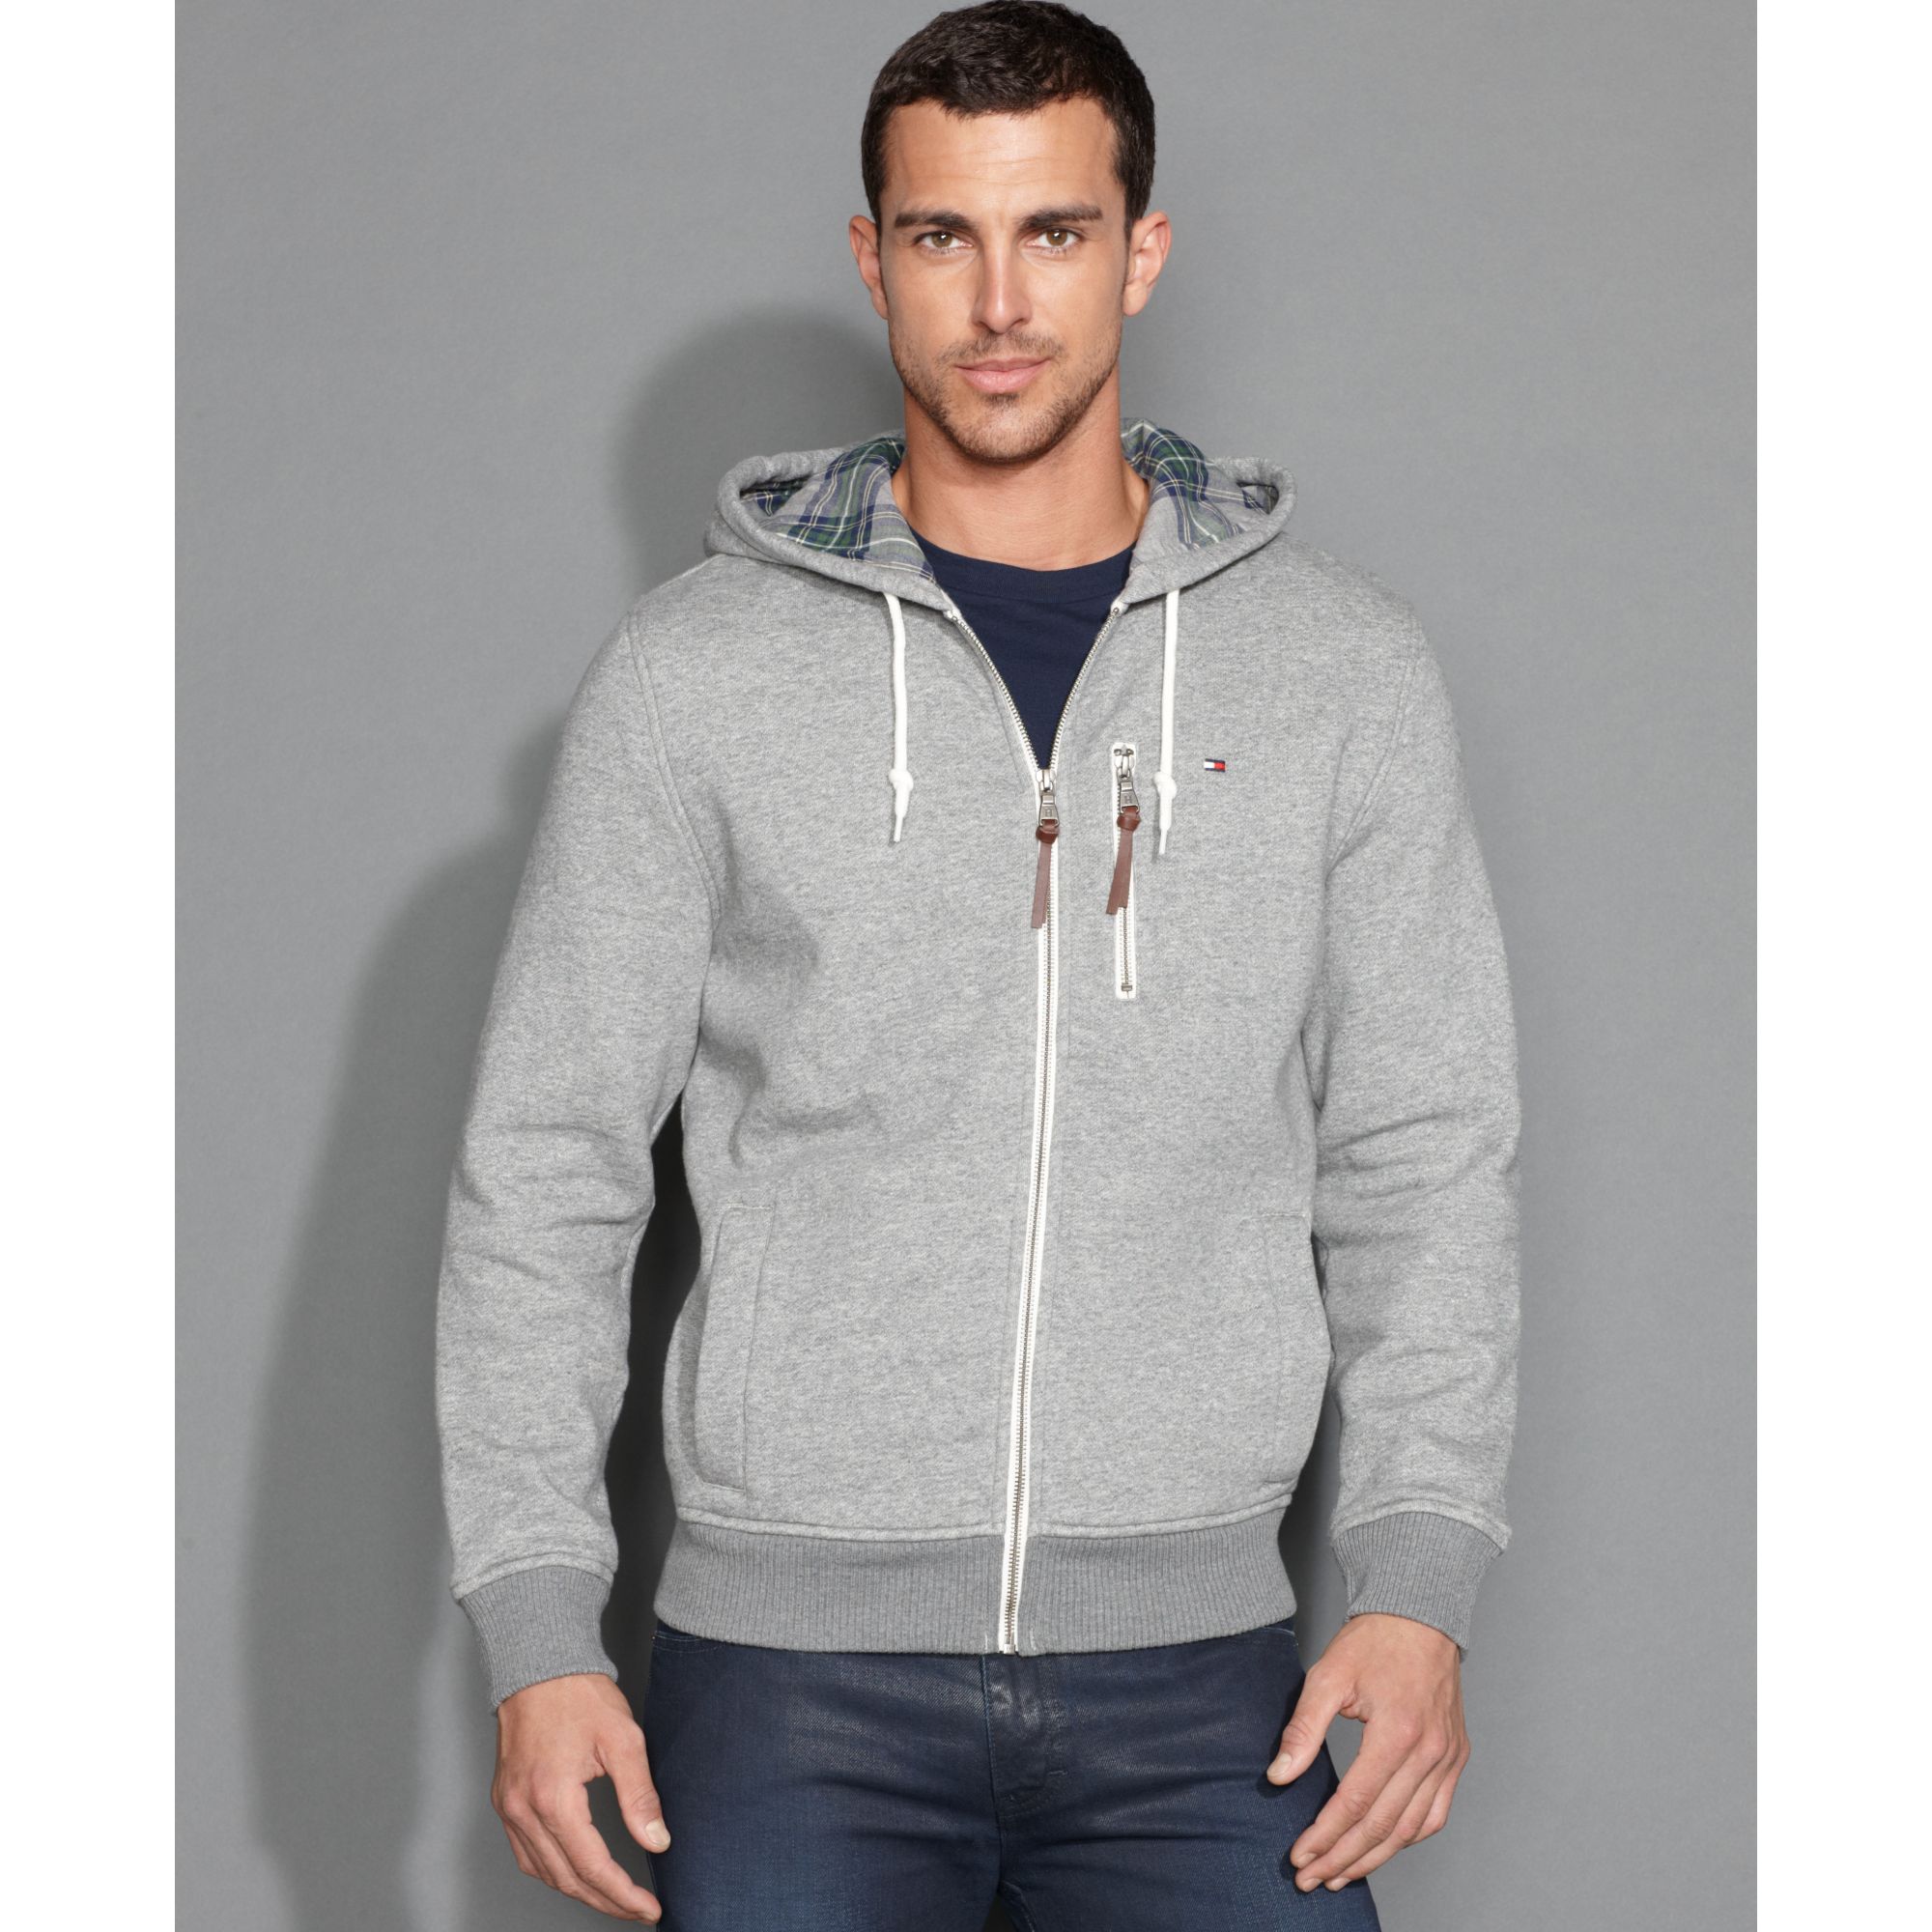 grey tommy hilfiger zip up hoodie